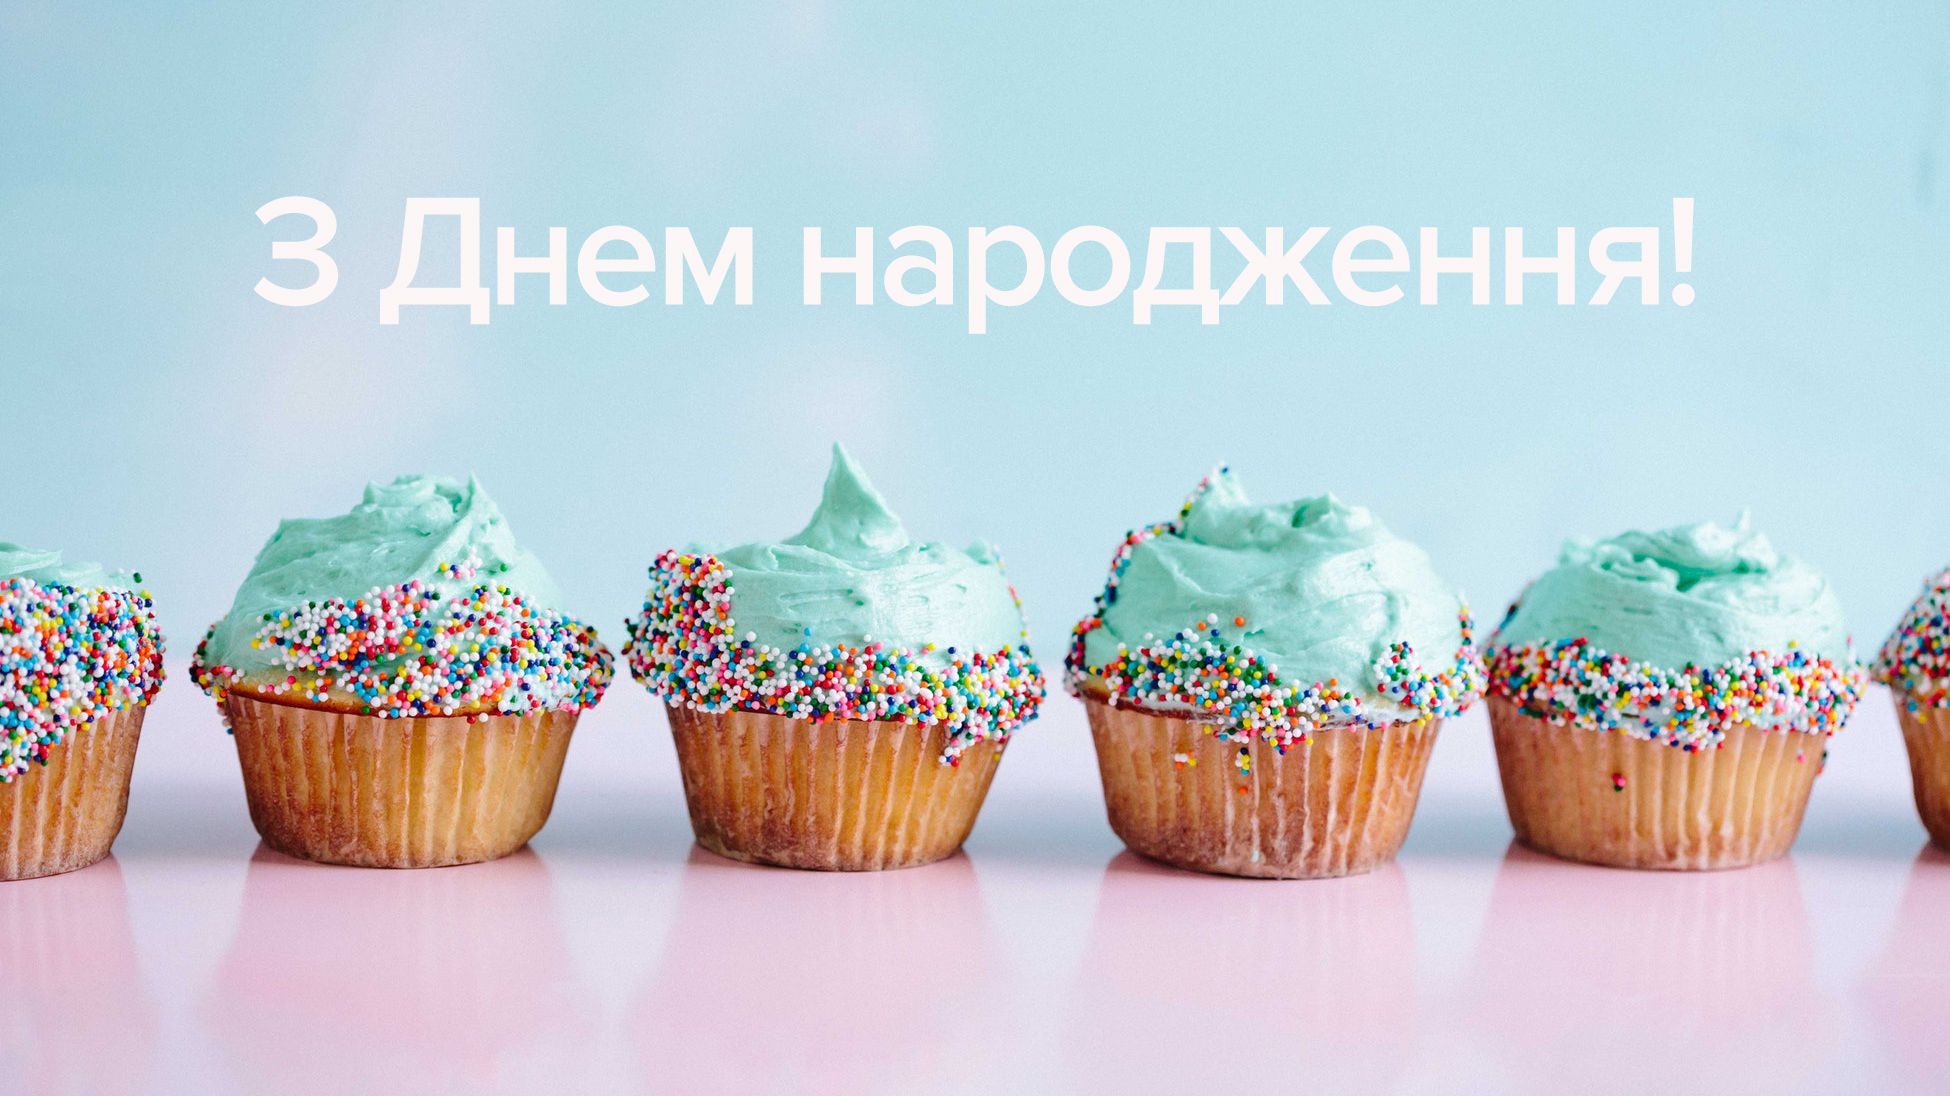 Привітання з днем народження батькові від дітей і онуків українською мовою
